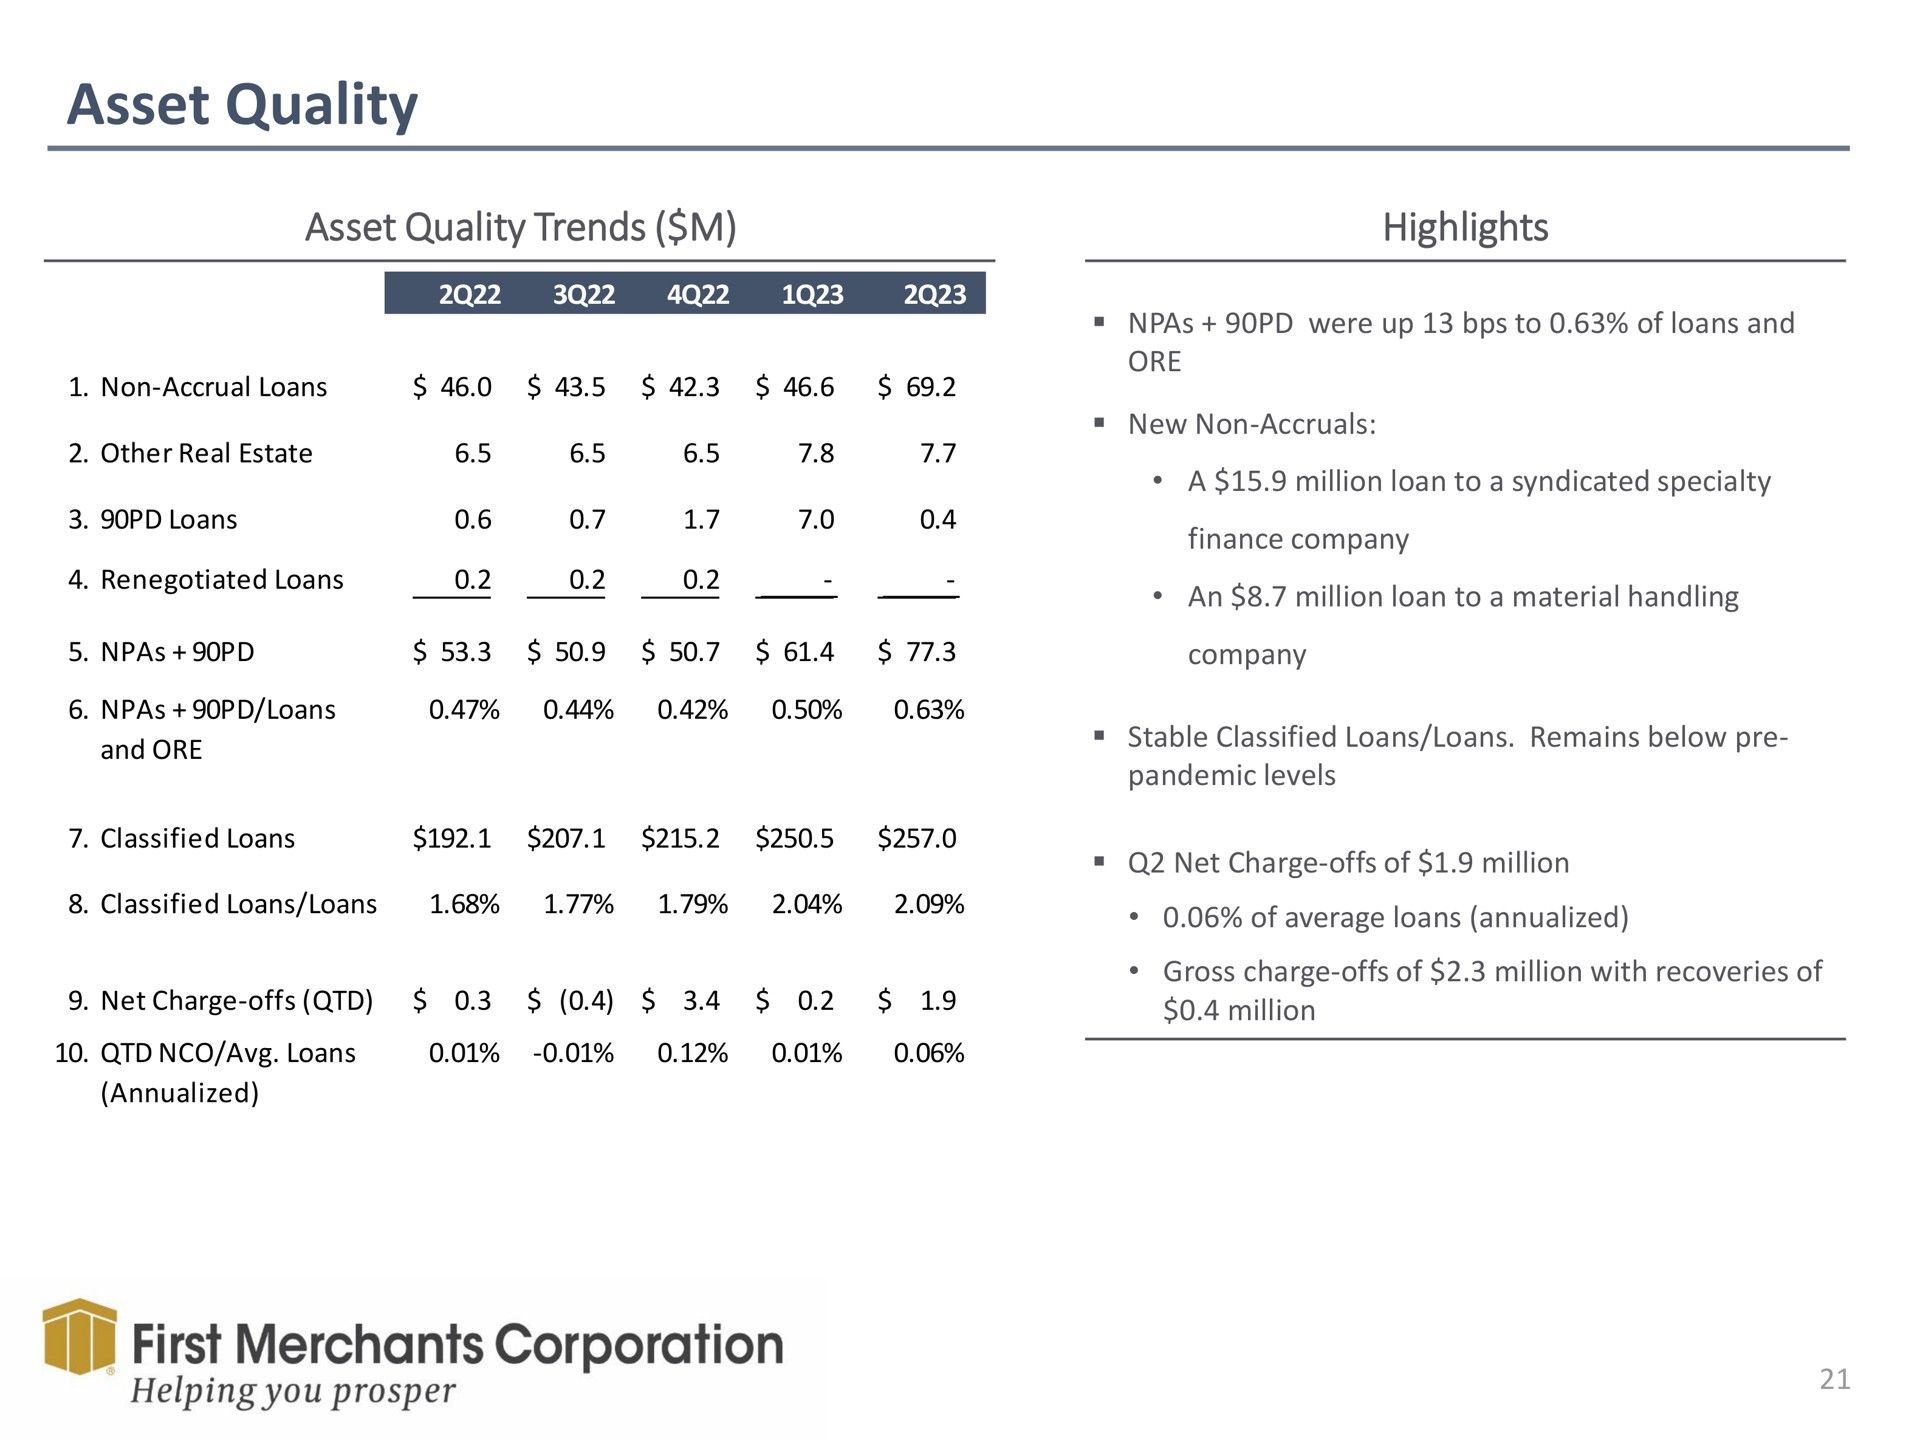 asset quality trends highlights first merchants corporation helping you prosper | First Merchants